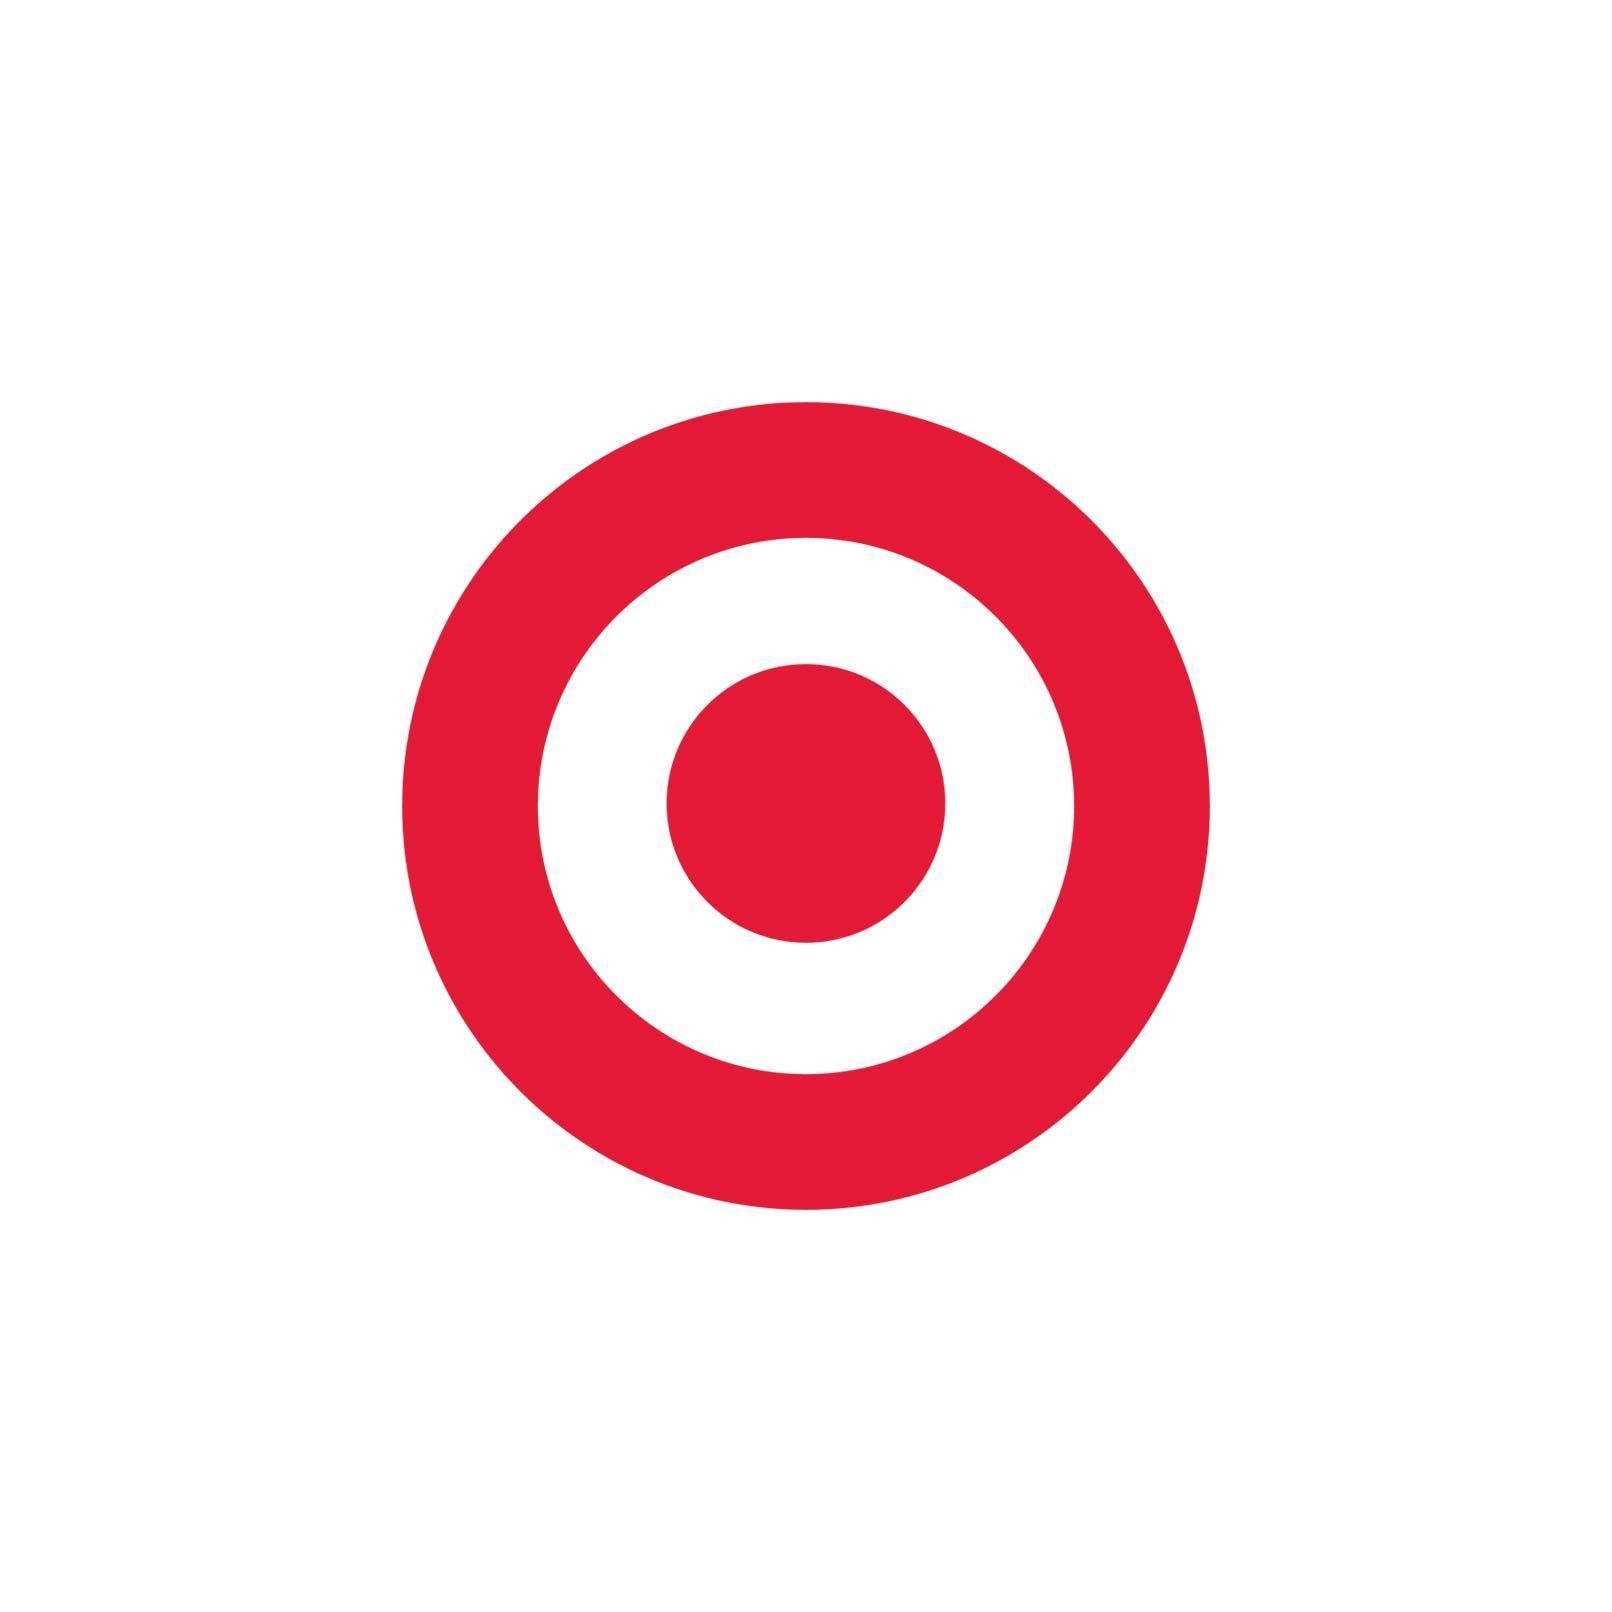 Bullseye Logo - Target Bullseye Logo - Verité